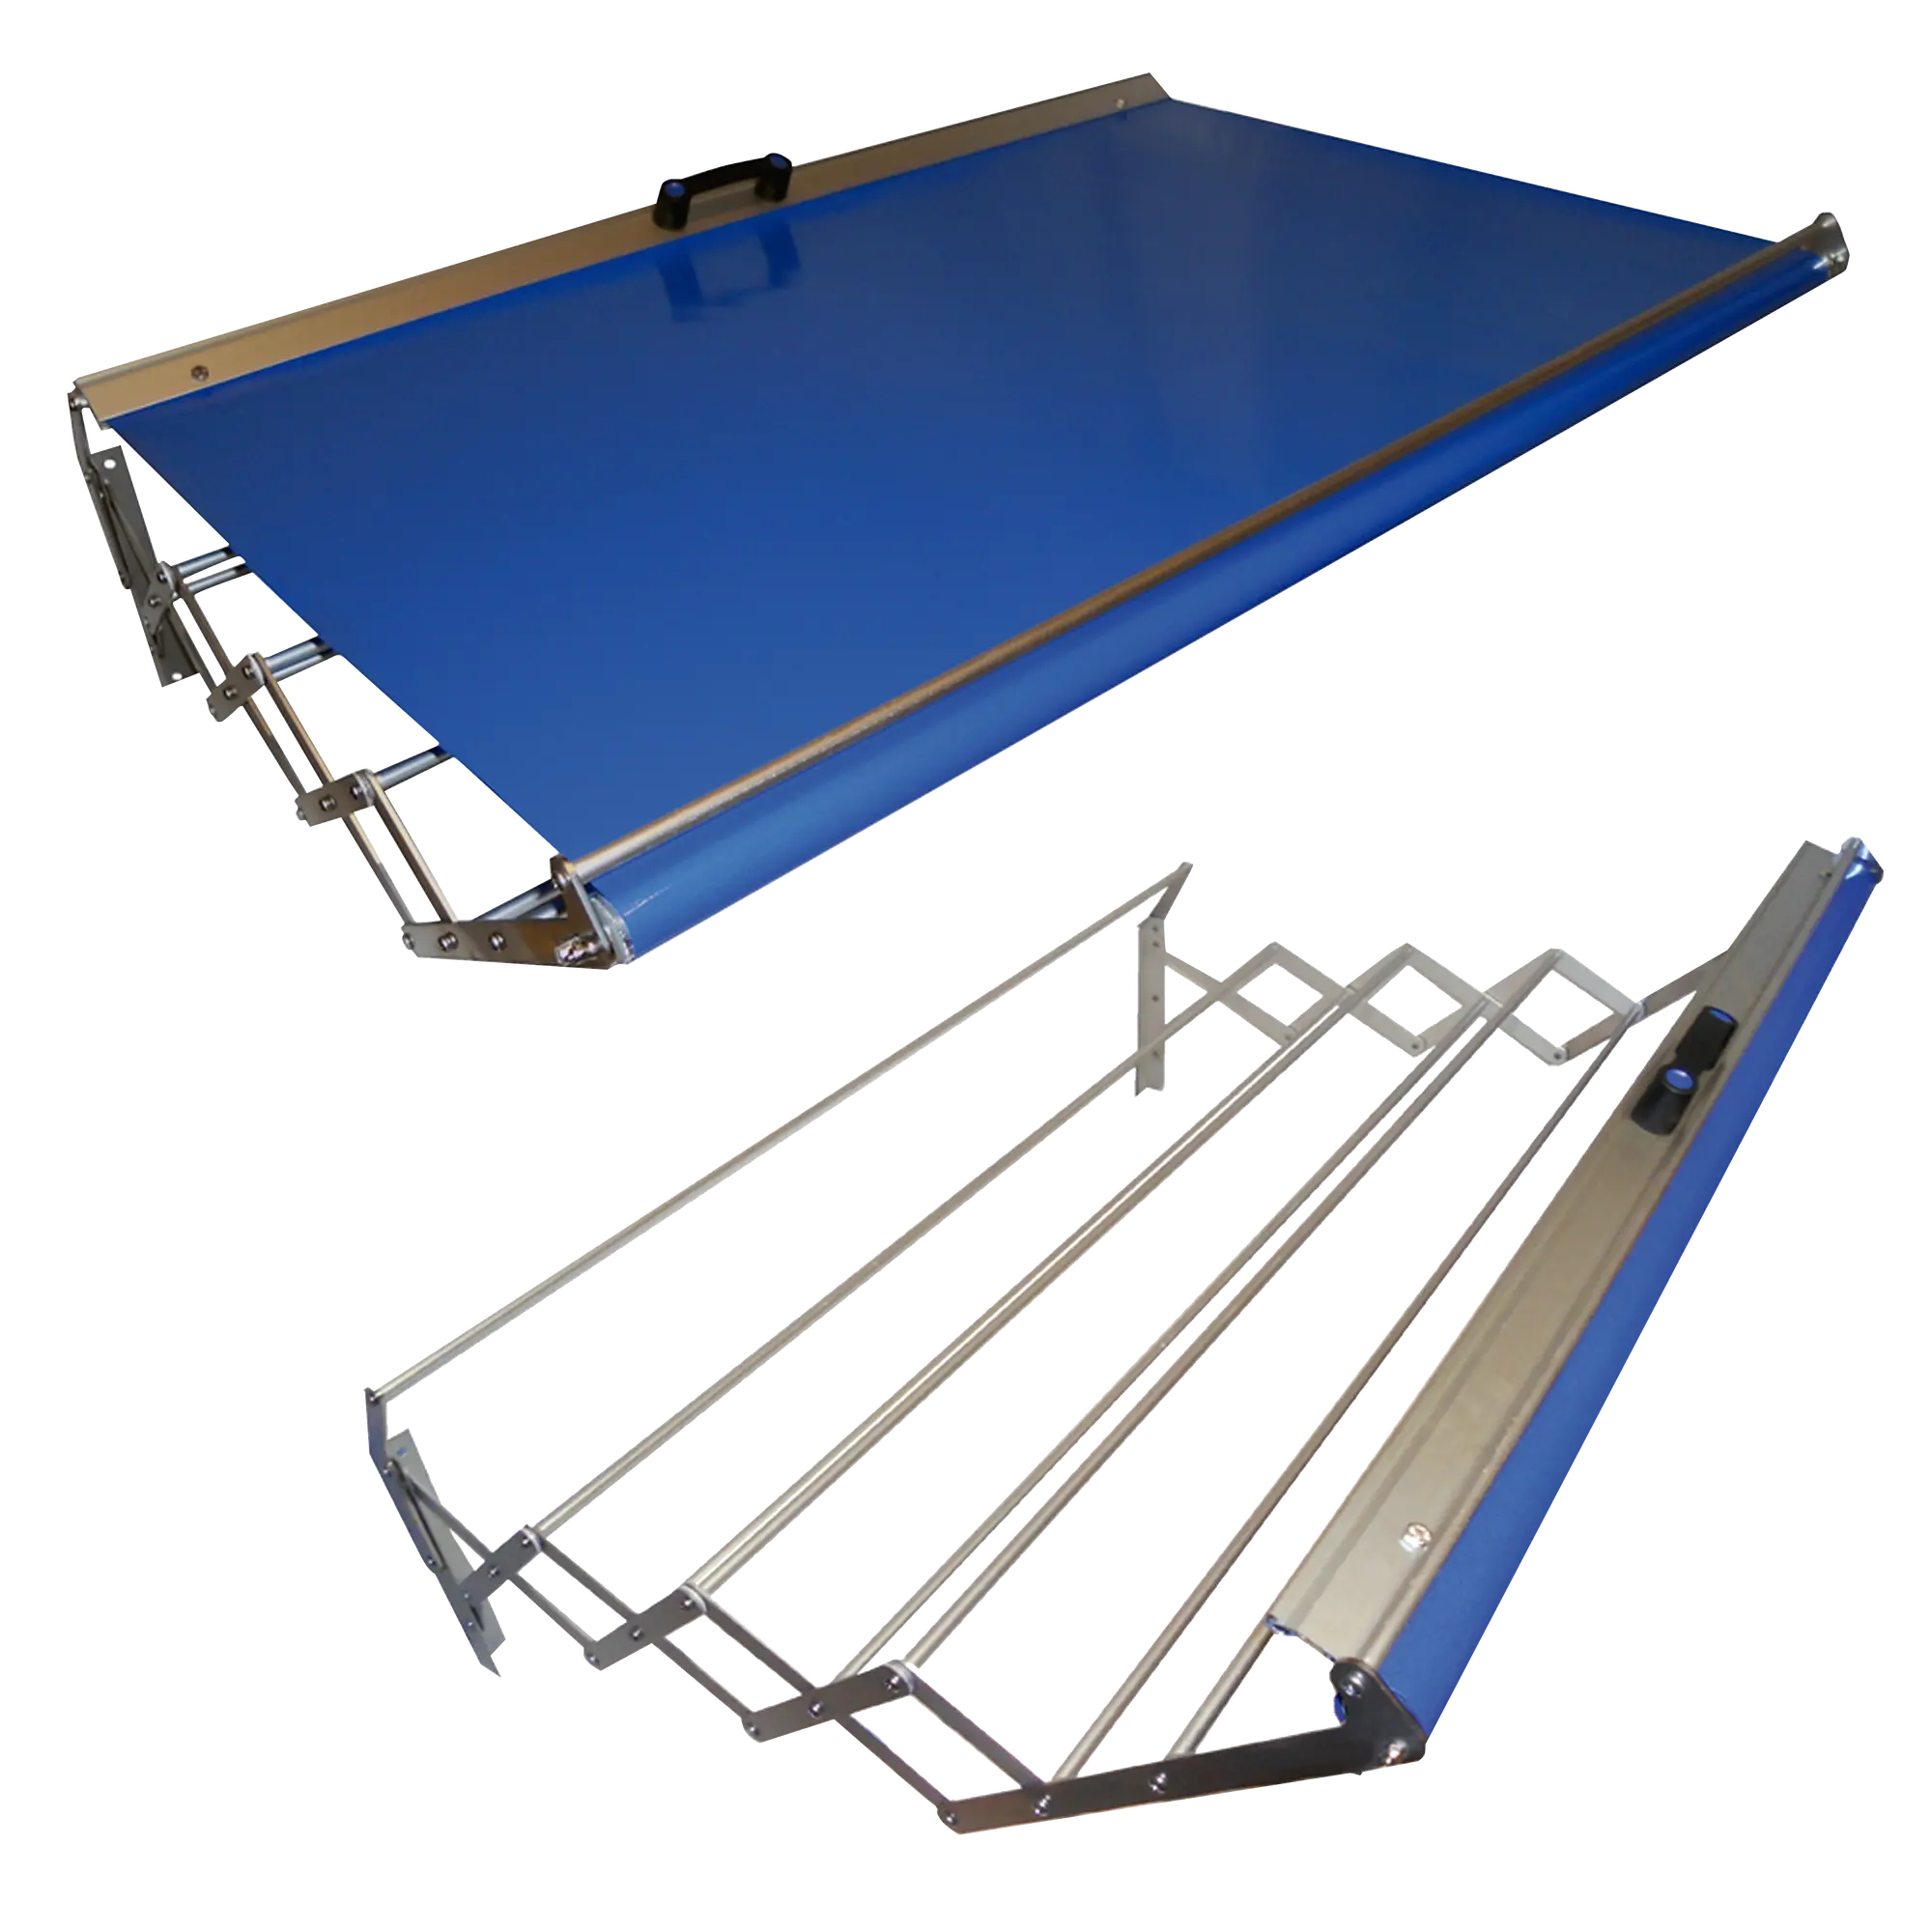 Tendedero barras extensible para pared de aluminio de 160x23x75 cm